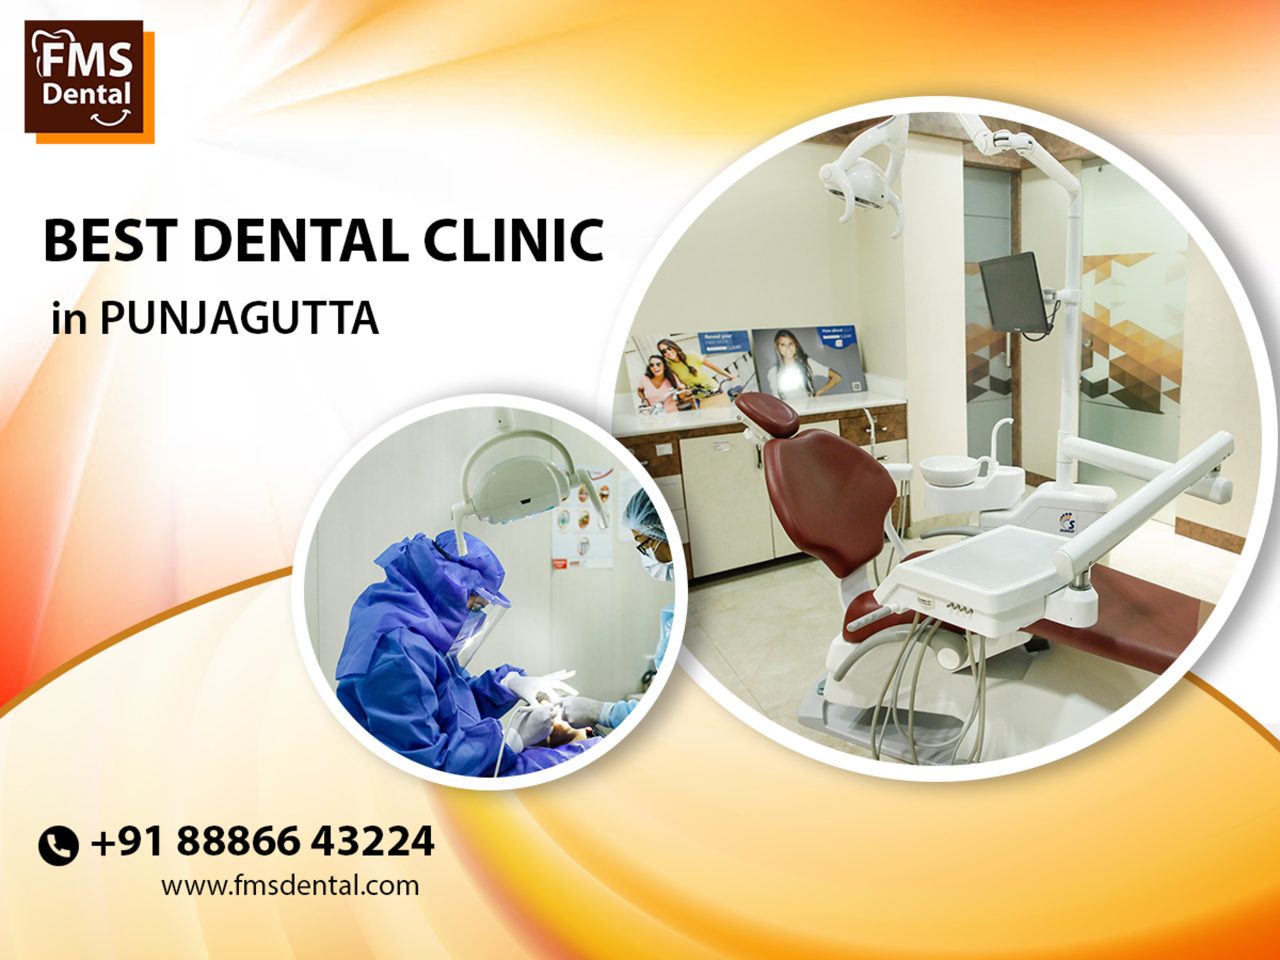 best dental clinic in punjagutta jpg (1)